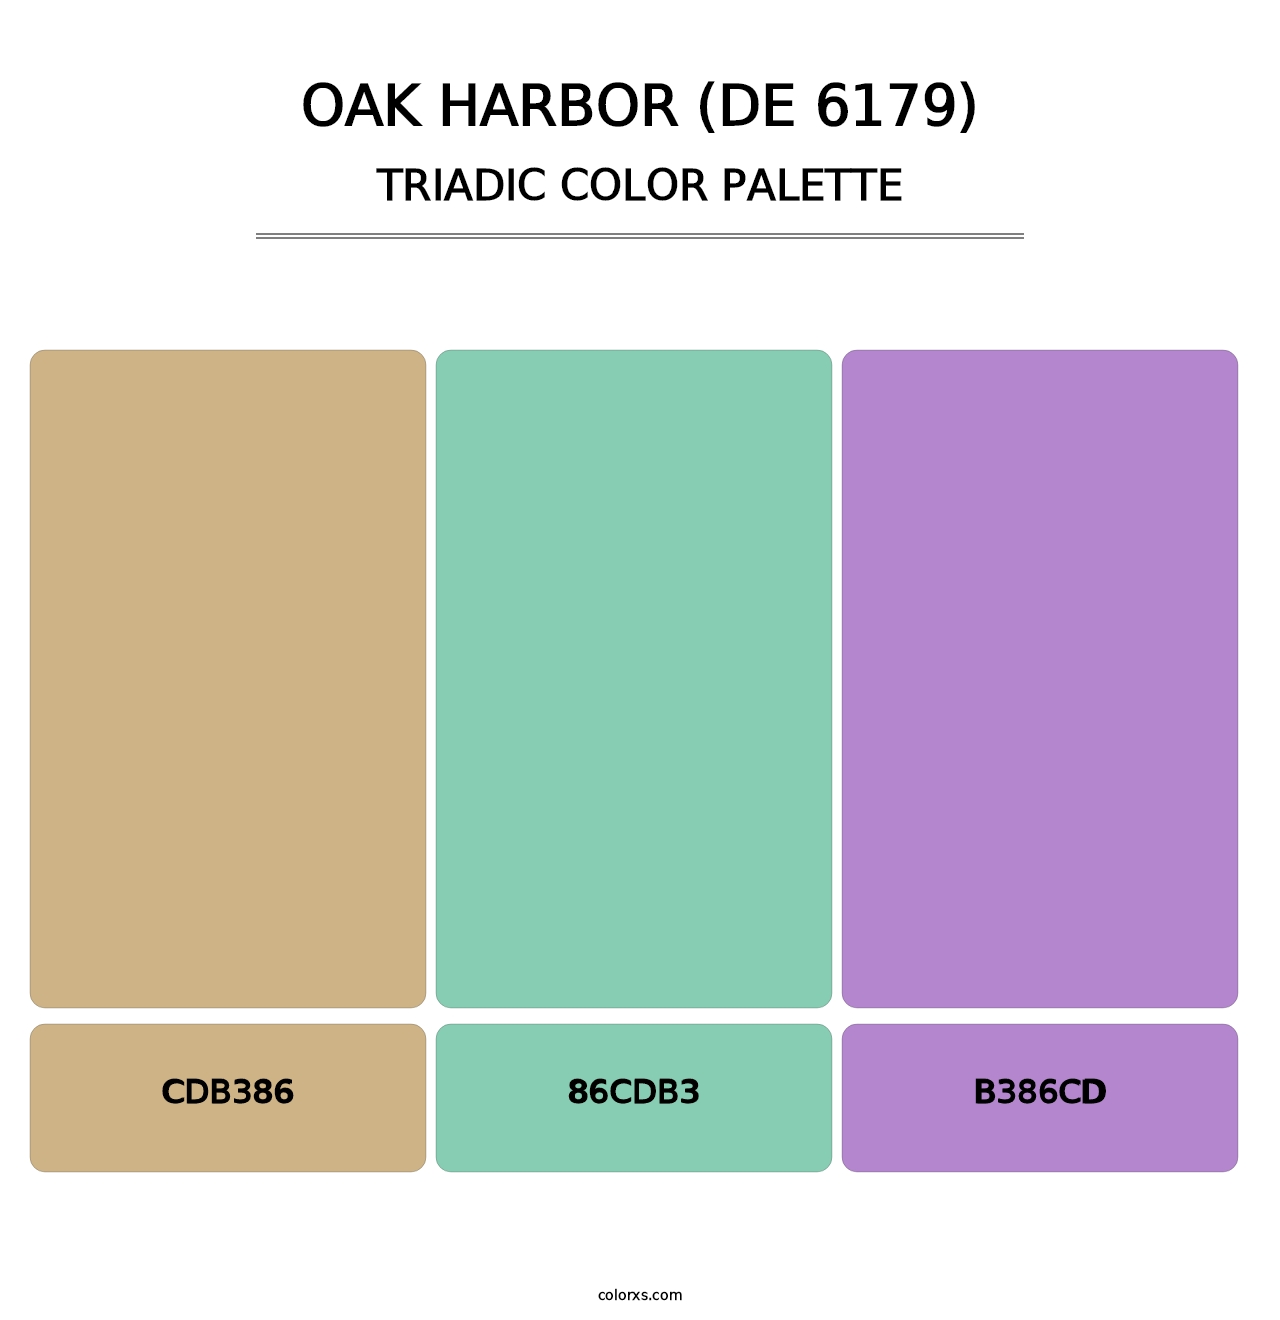 Oak Harbor (DE 6179) - Triadic Color Palette